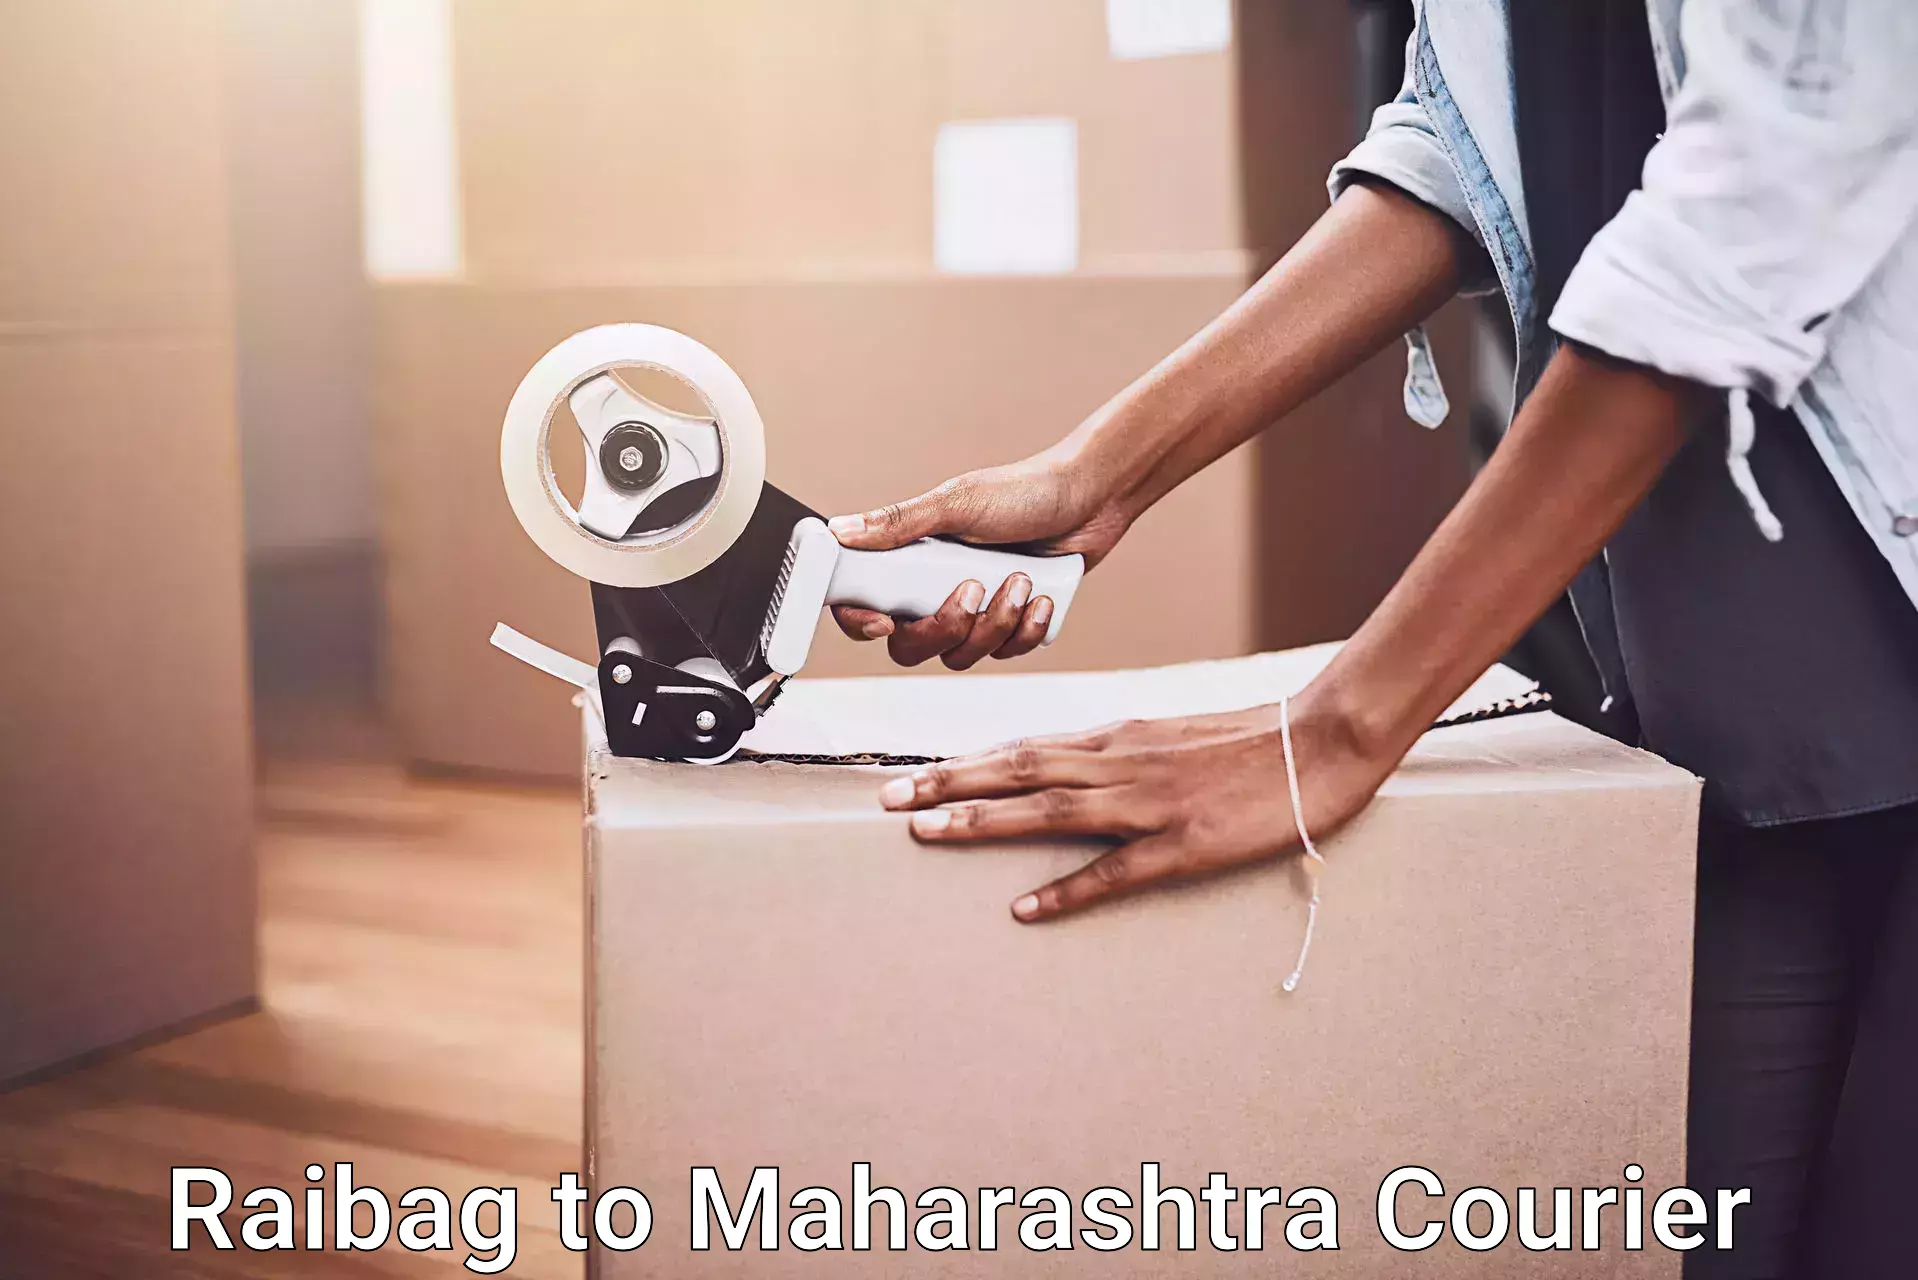 Furniture movers and packers Raibag to Maharashtra